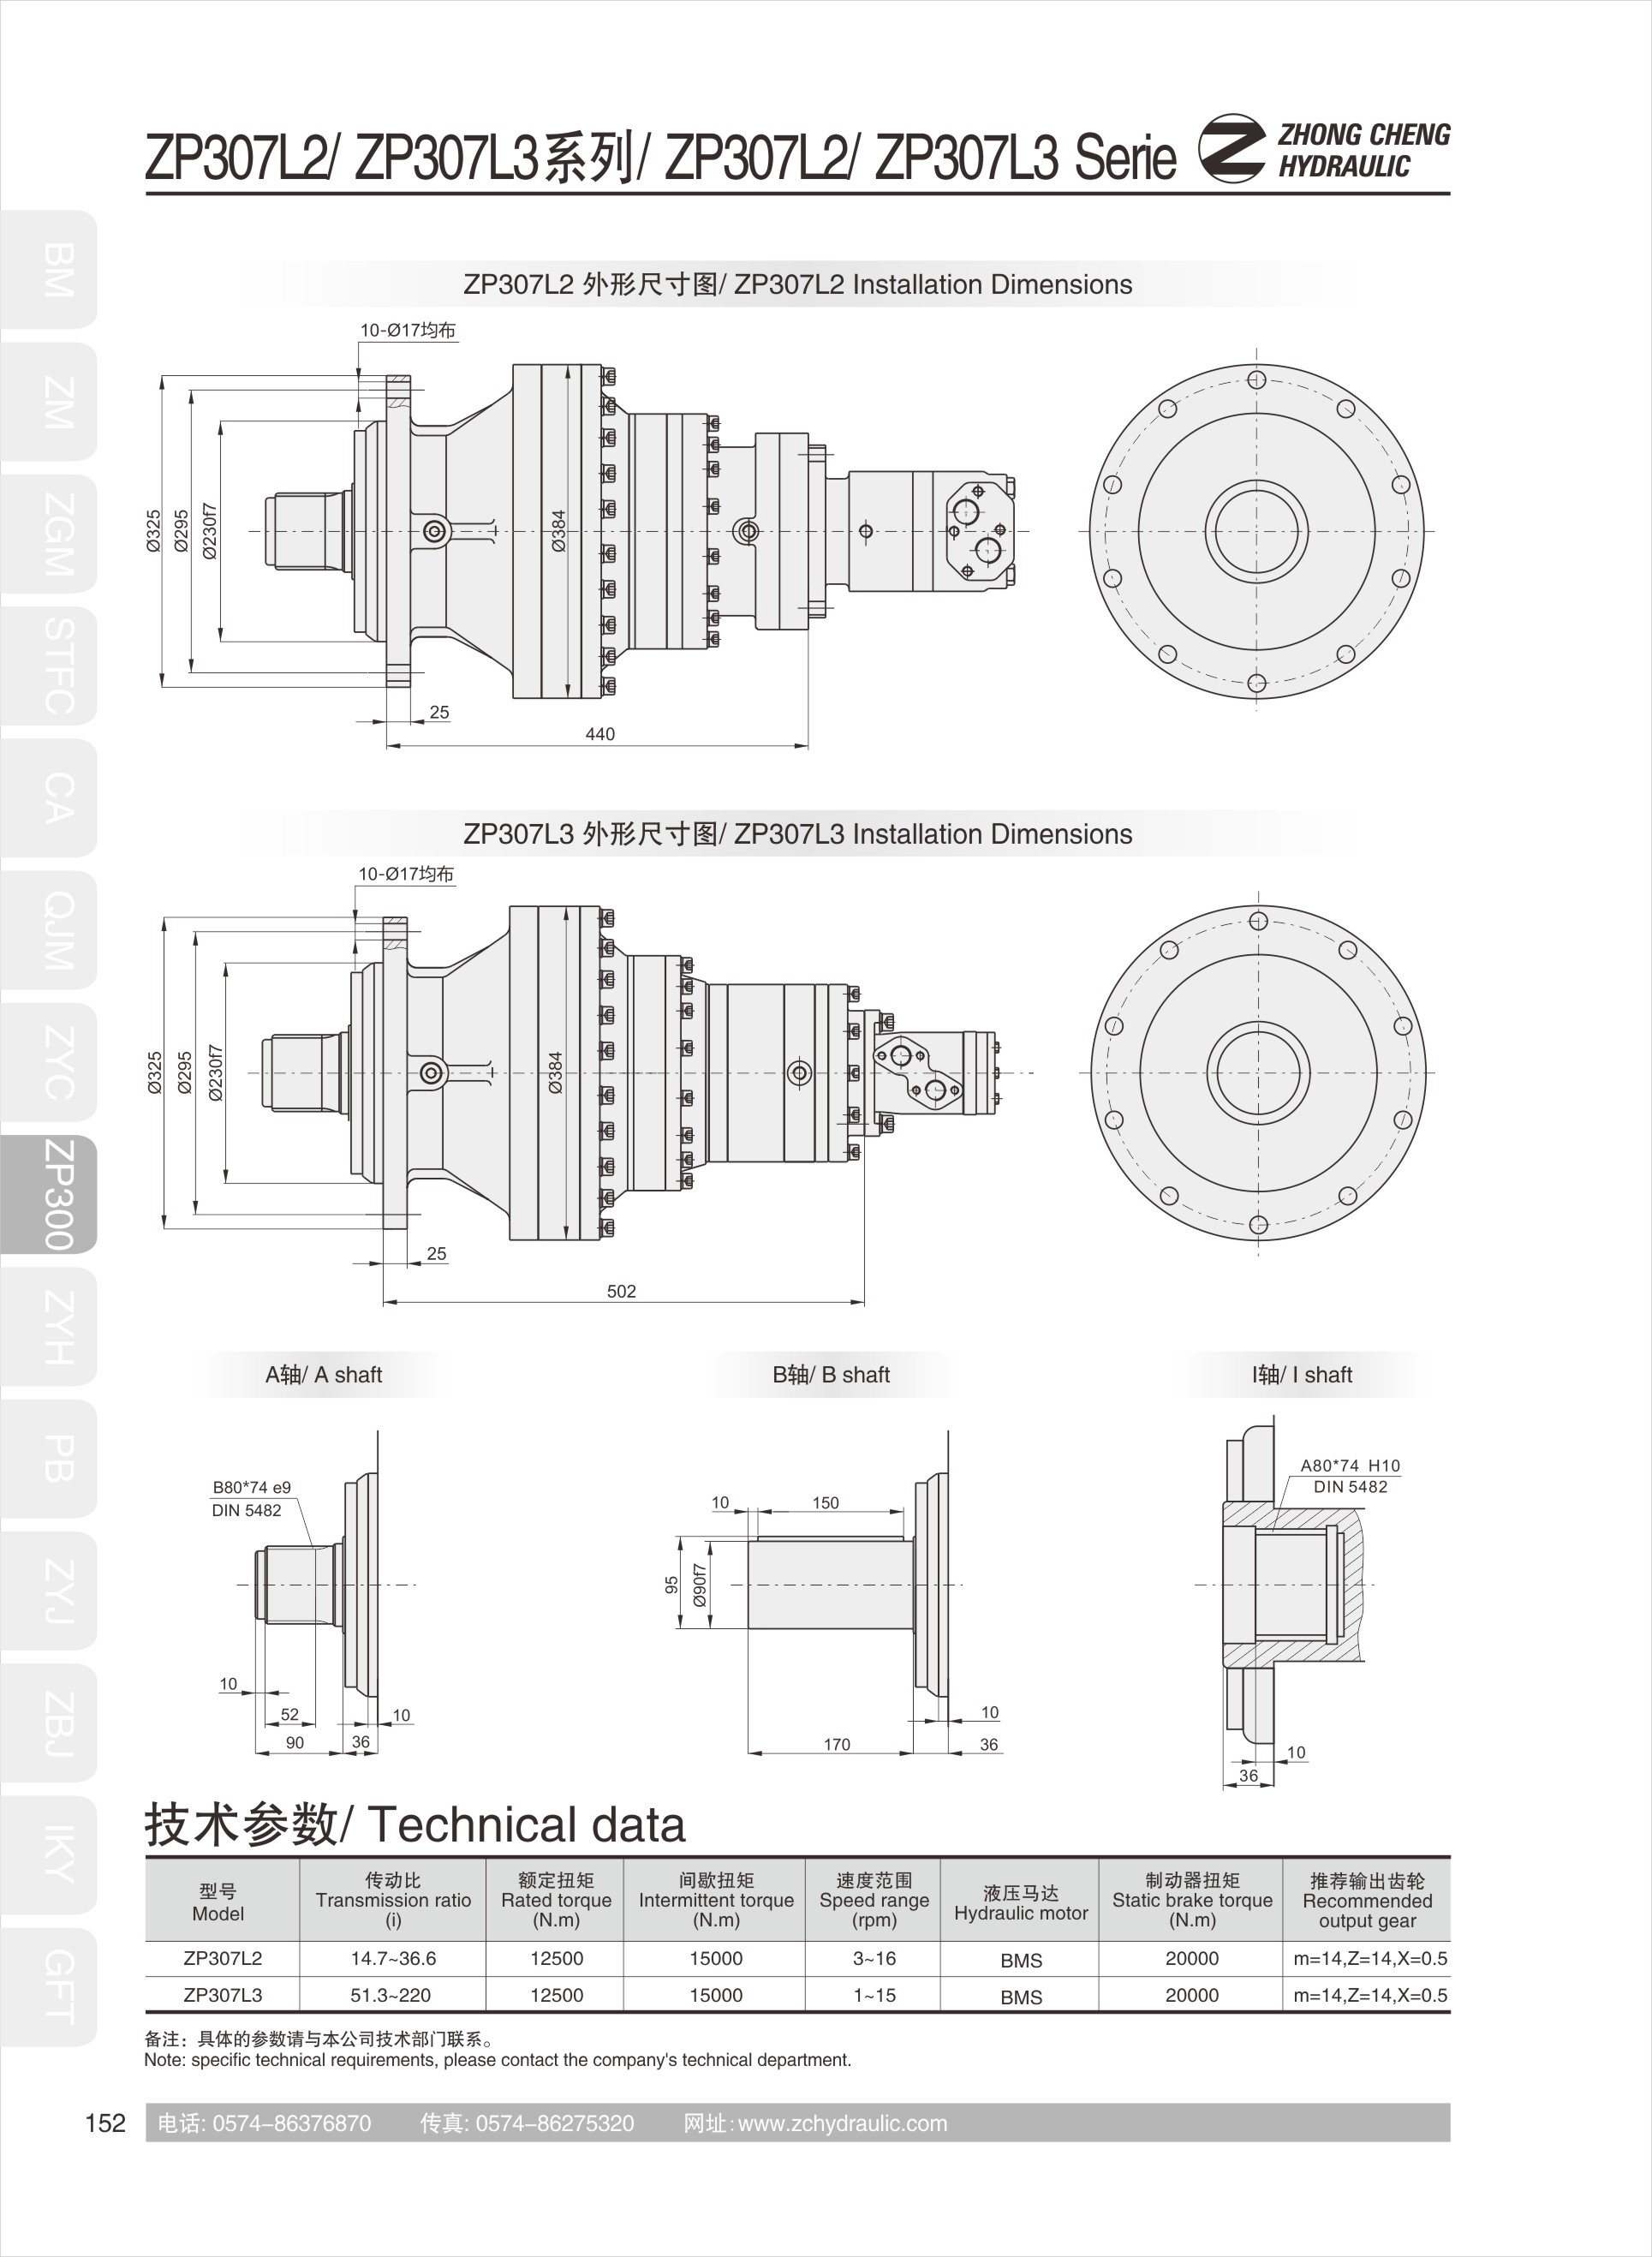 Hydraulic transmissionZP300(图7)